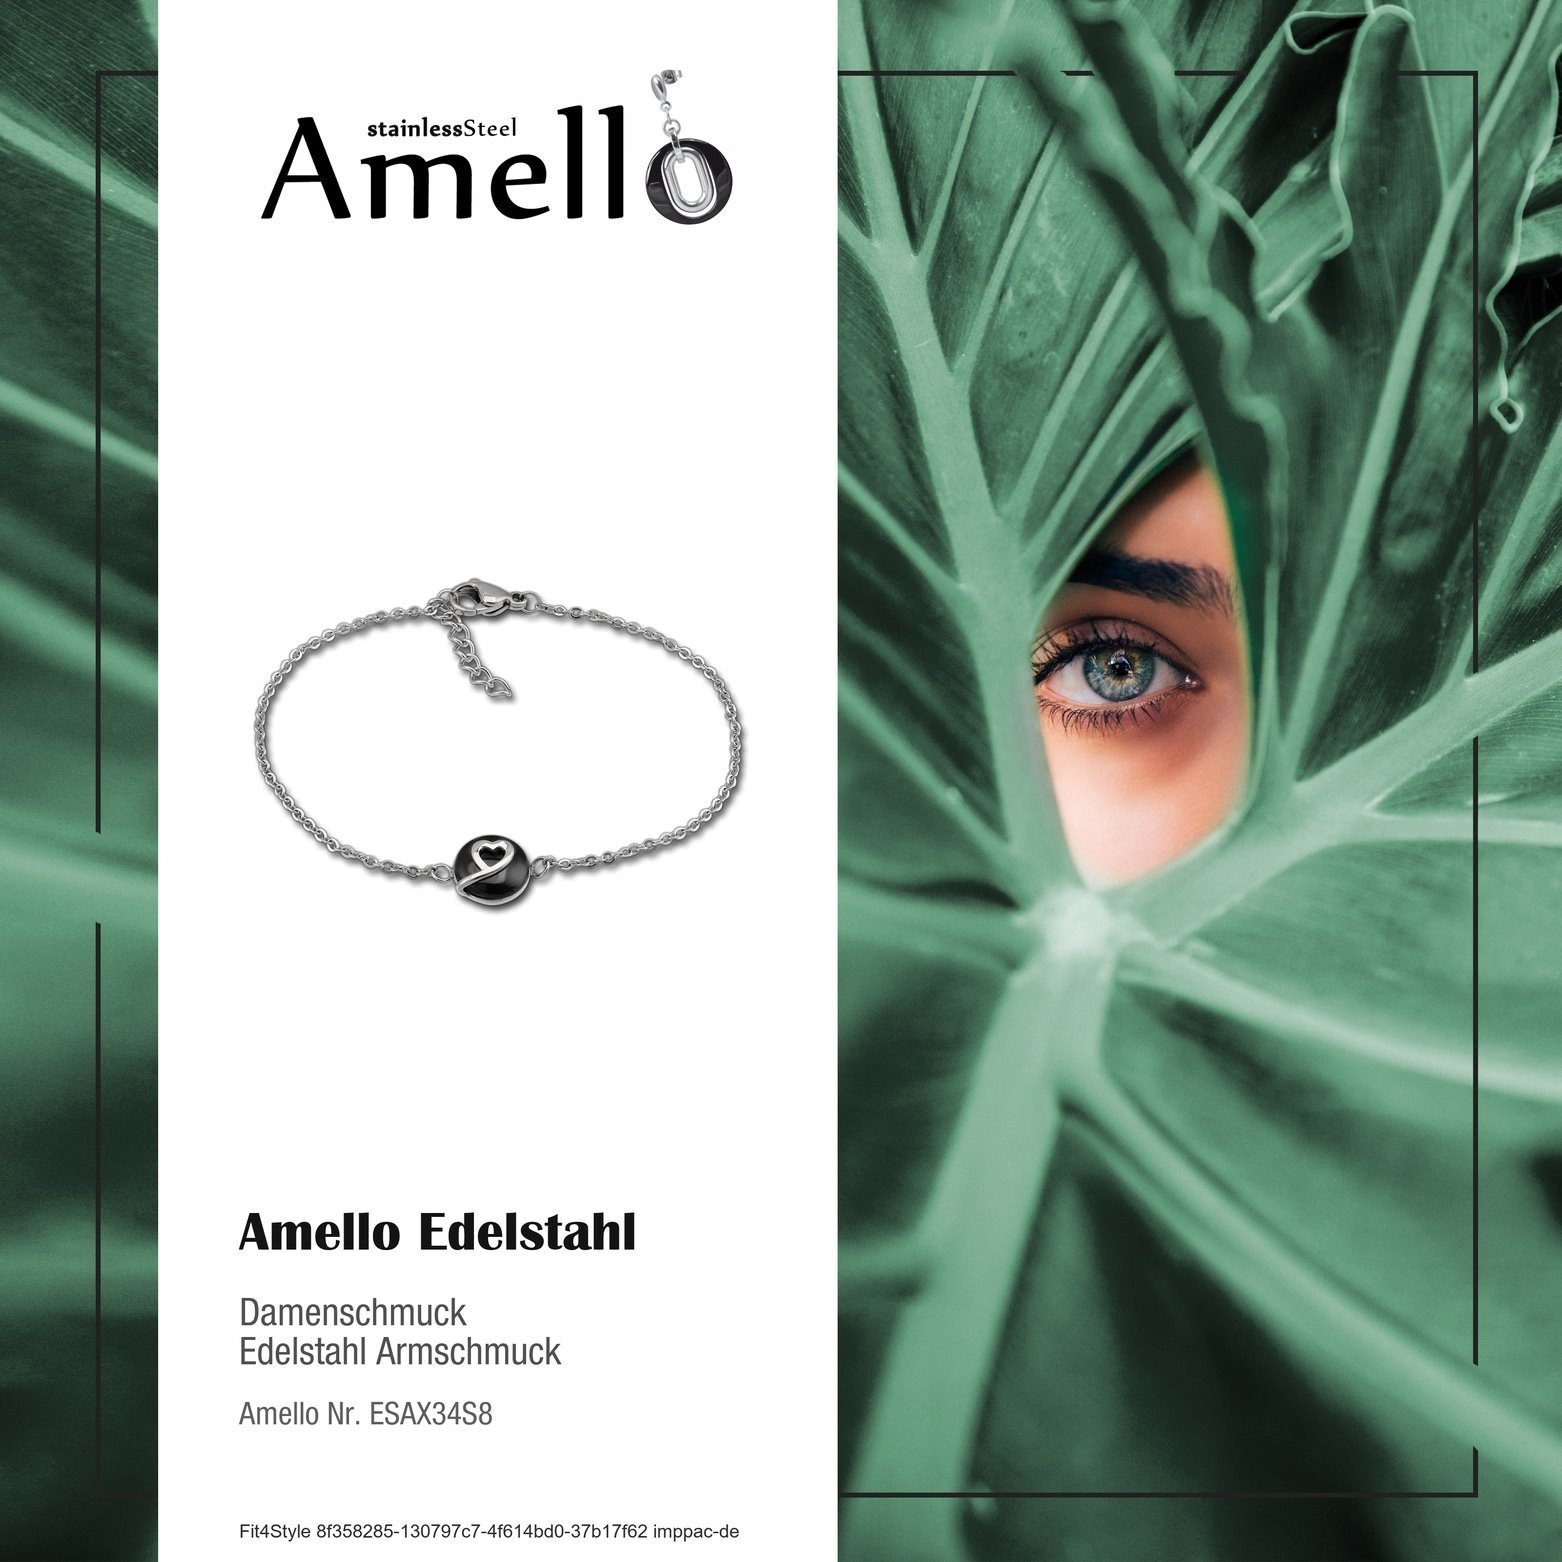 Edelstahl Damen (Stainless (Armband), für Amello Herzchen schwarz Armband silber Armbänder Amello Edelstahlarmband Steel)